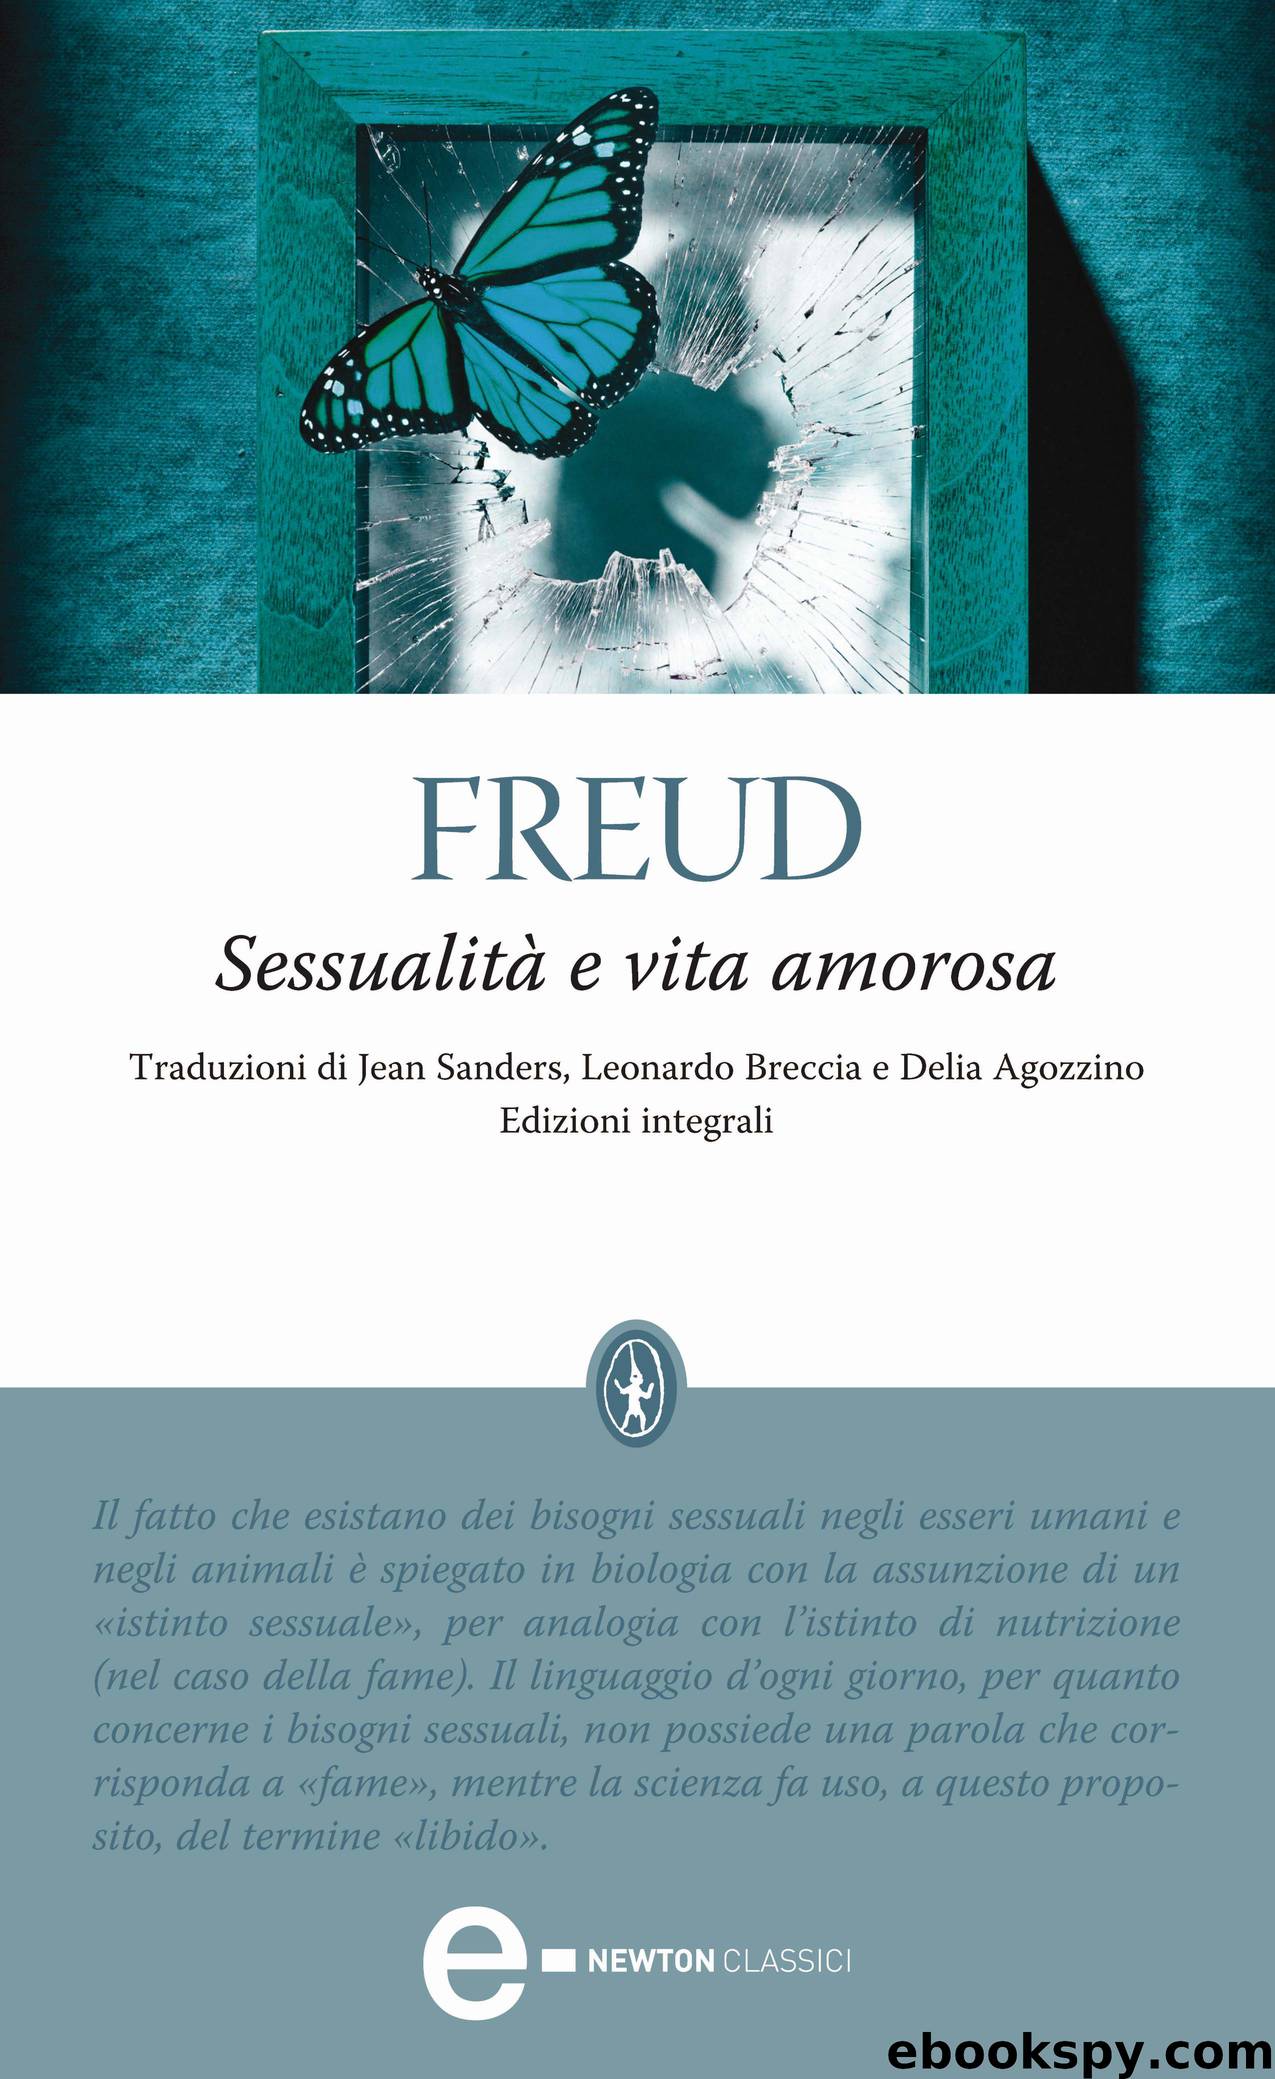 Sessualità e vita amorosa by Sigmund Freud